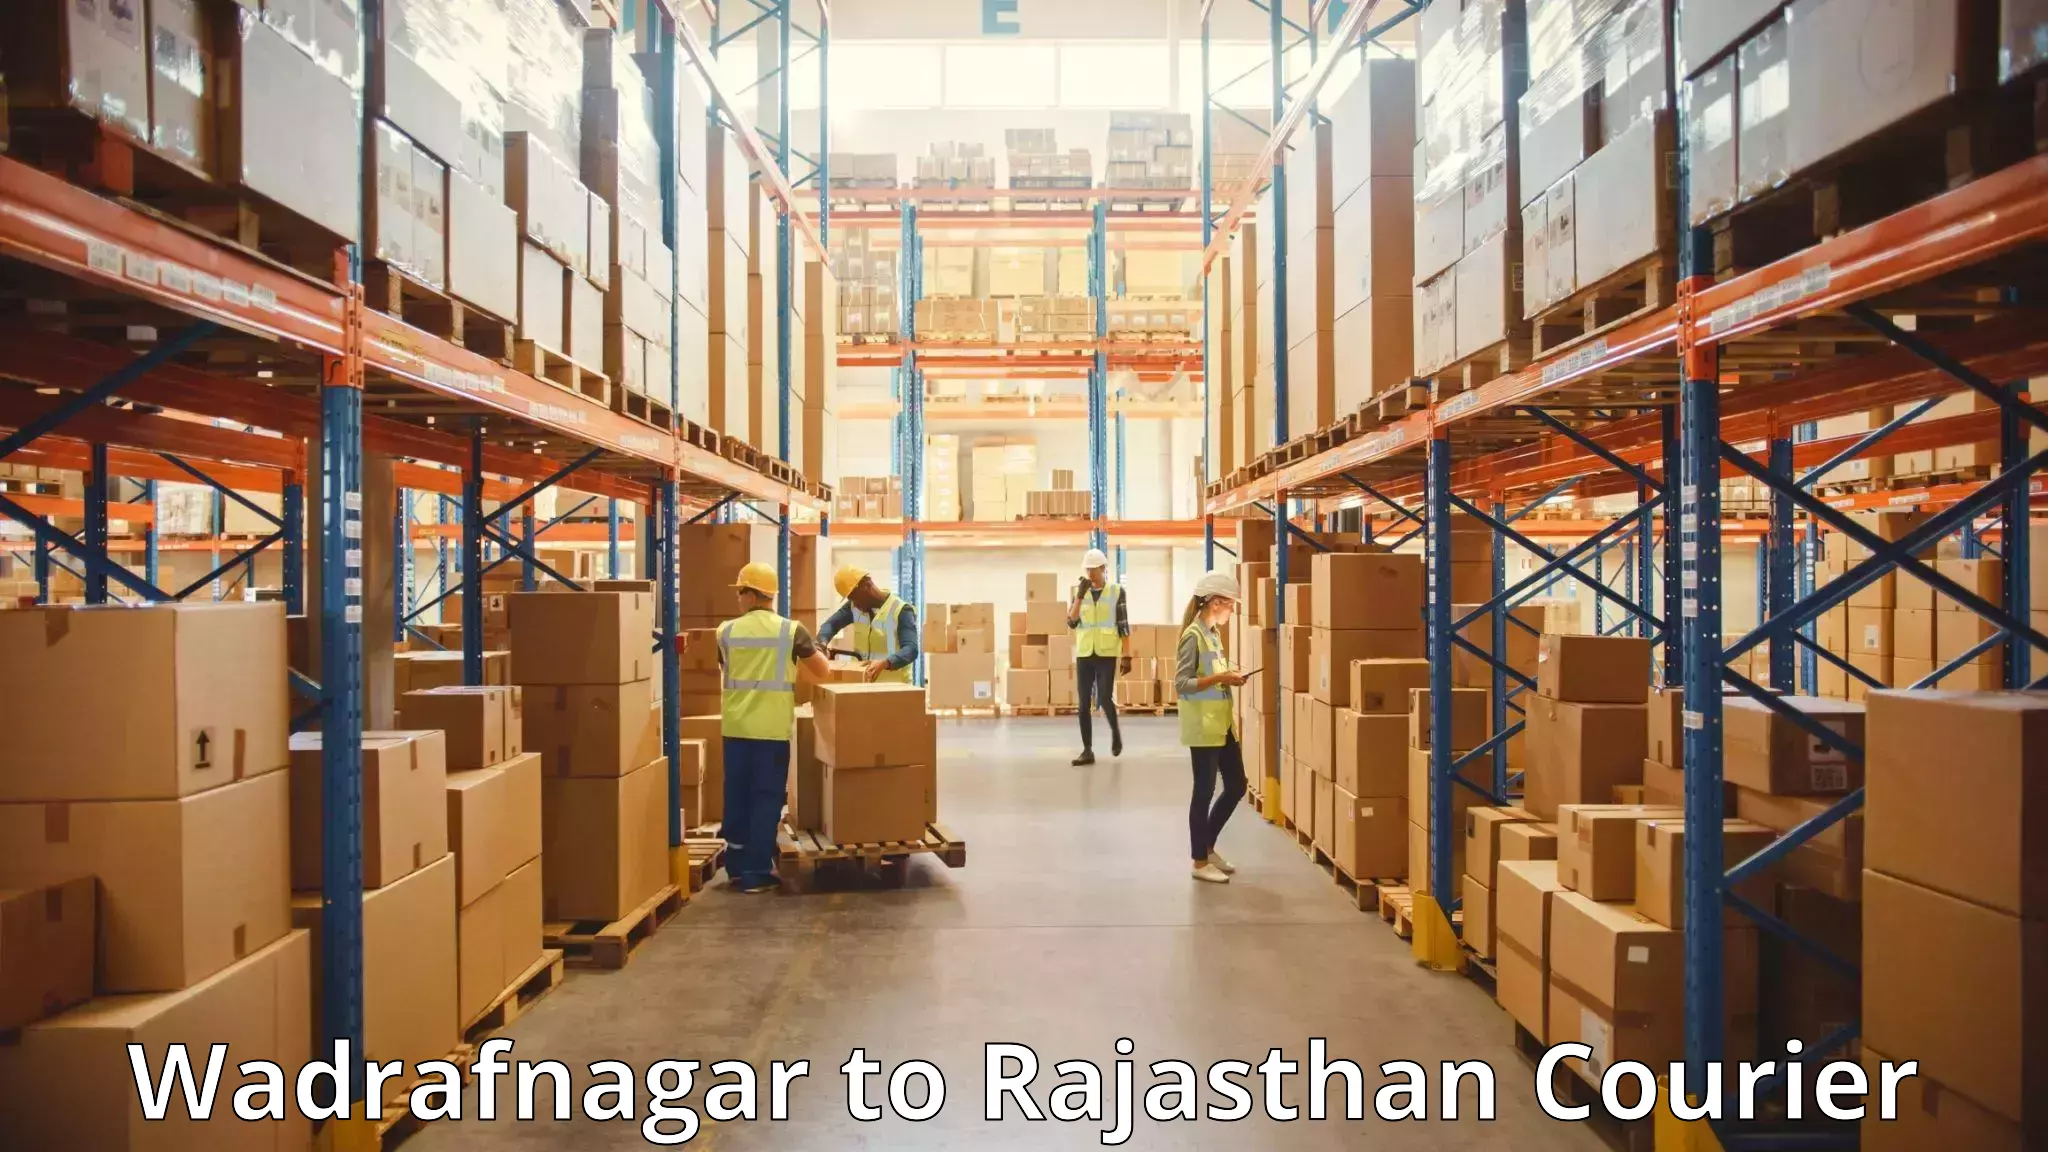 Luggage forwarding service Wadrafnagar to Sri Vijaynagar